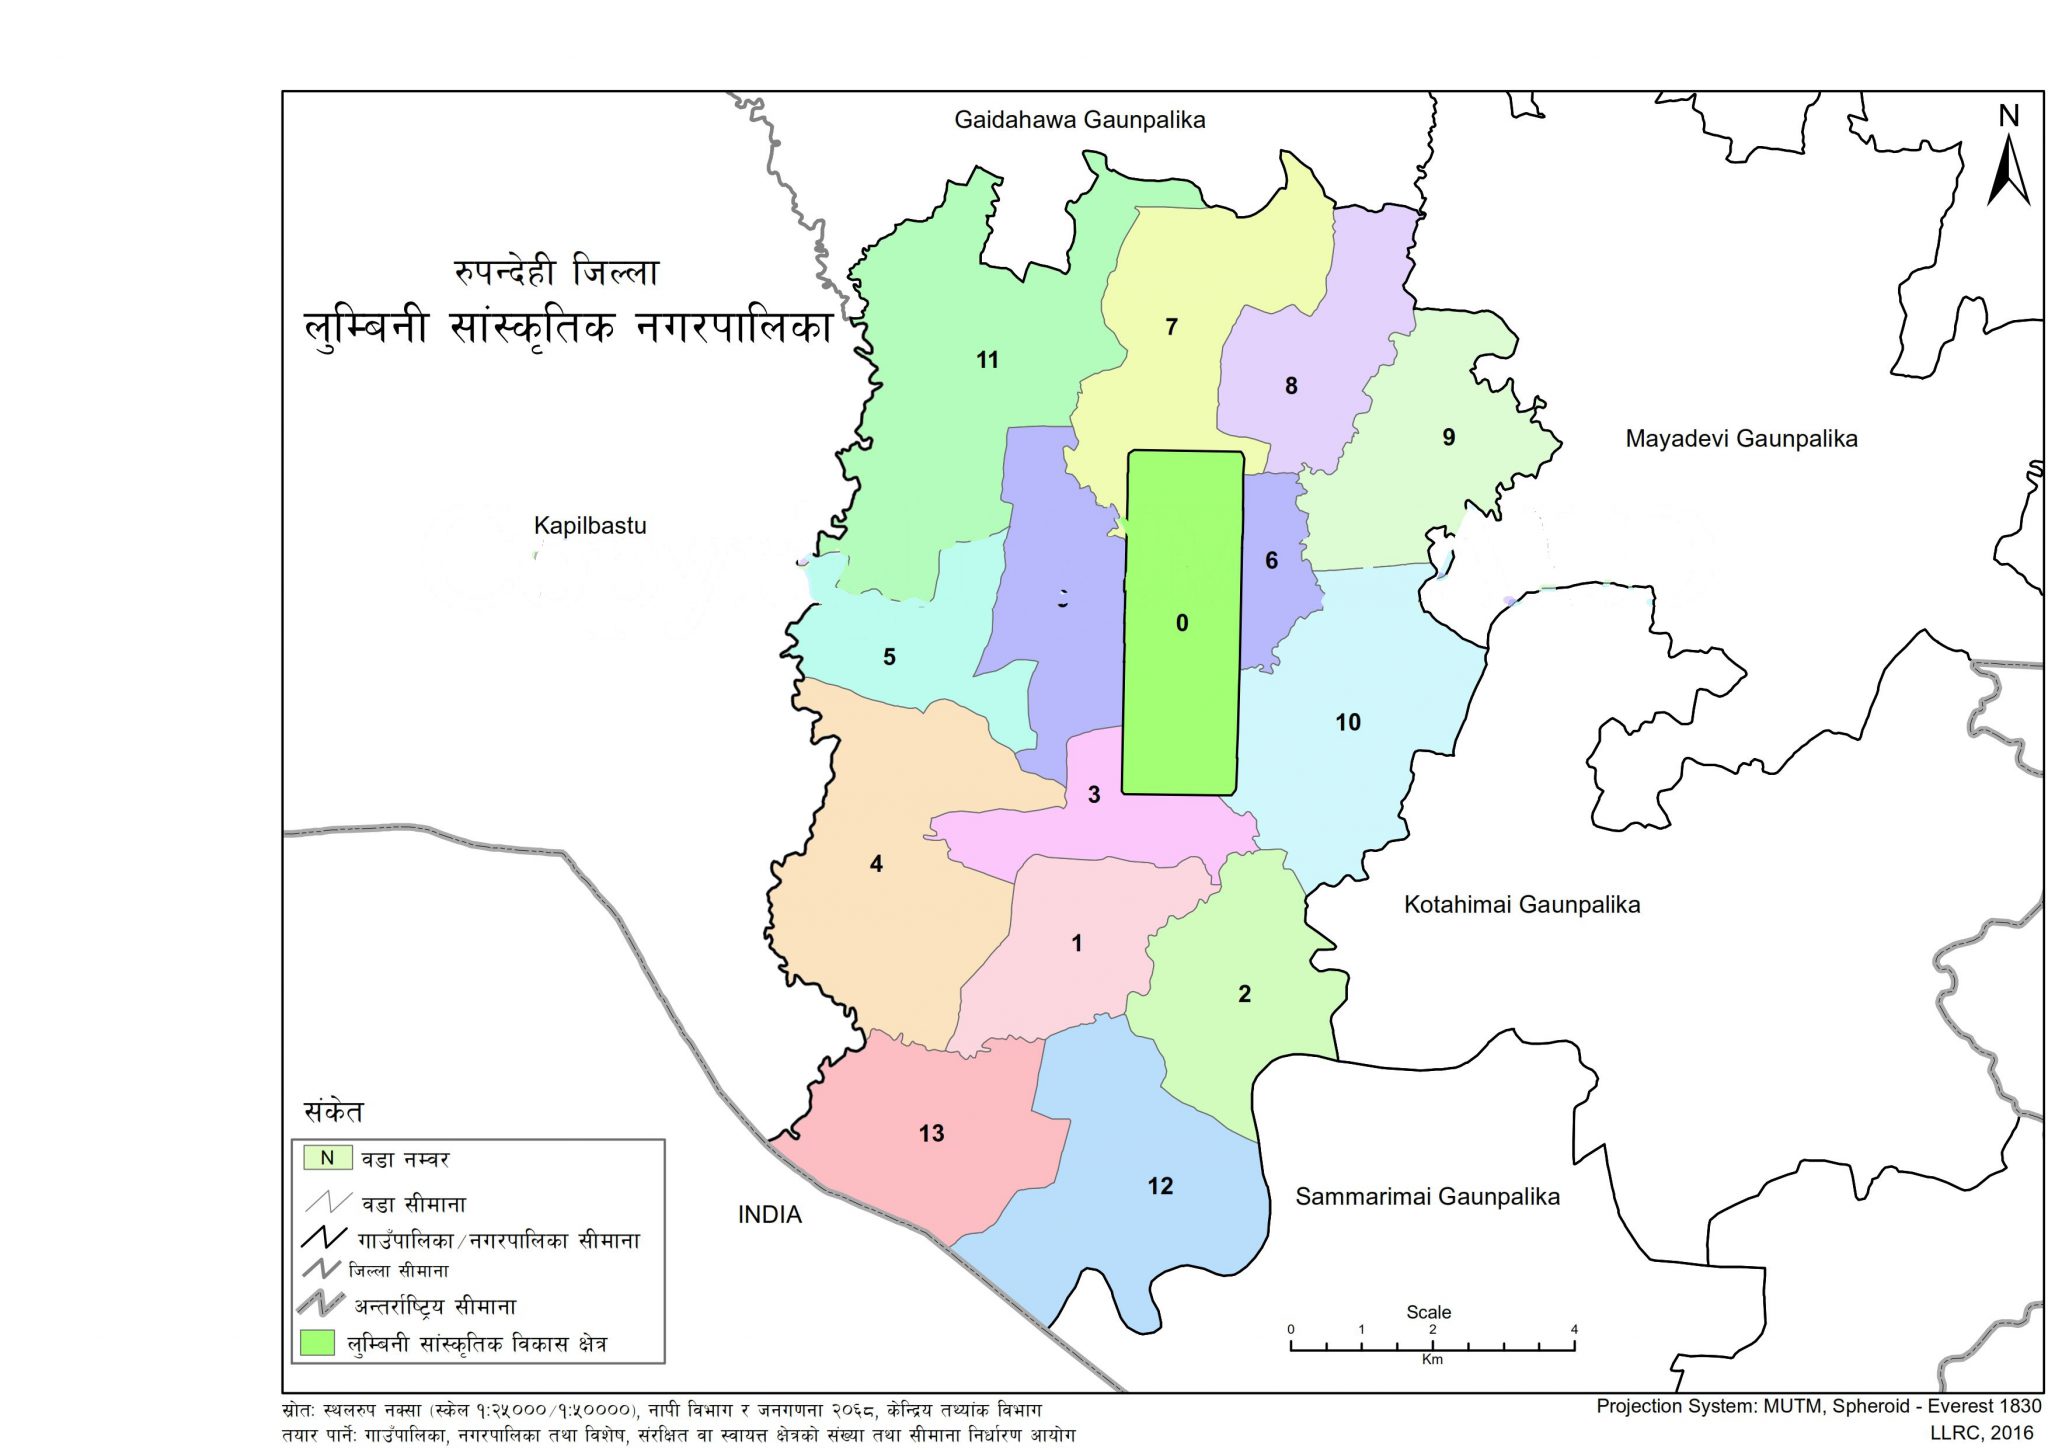 Lumbini Sanskritik Municipality Rupandehi Province No. 5 Nepal 2048x1450 